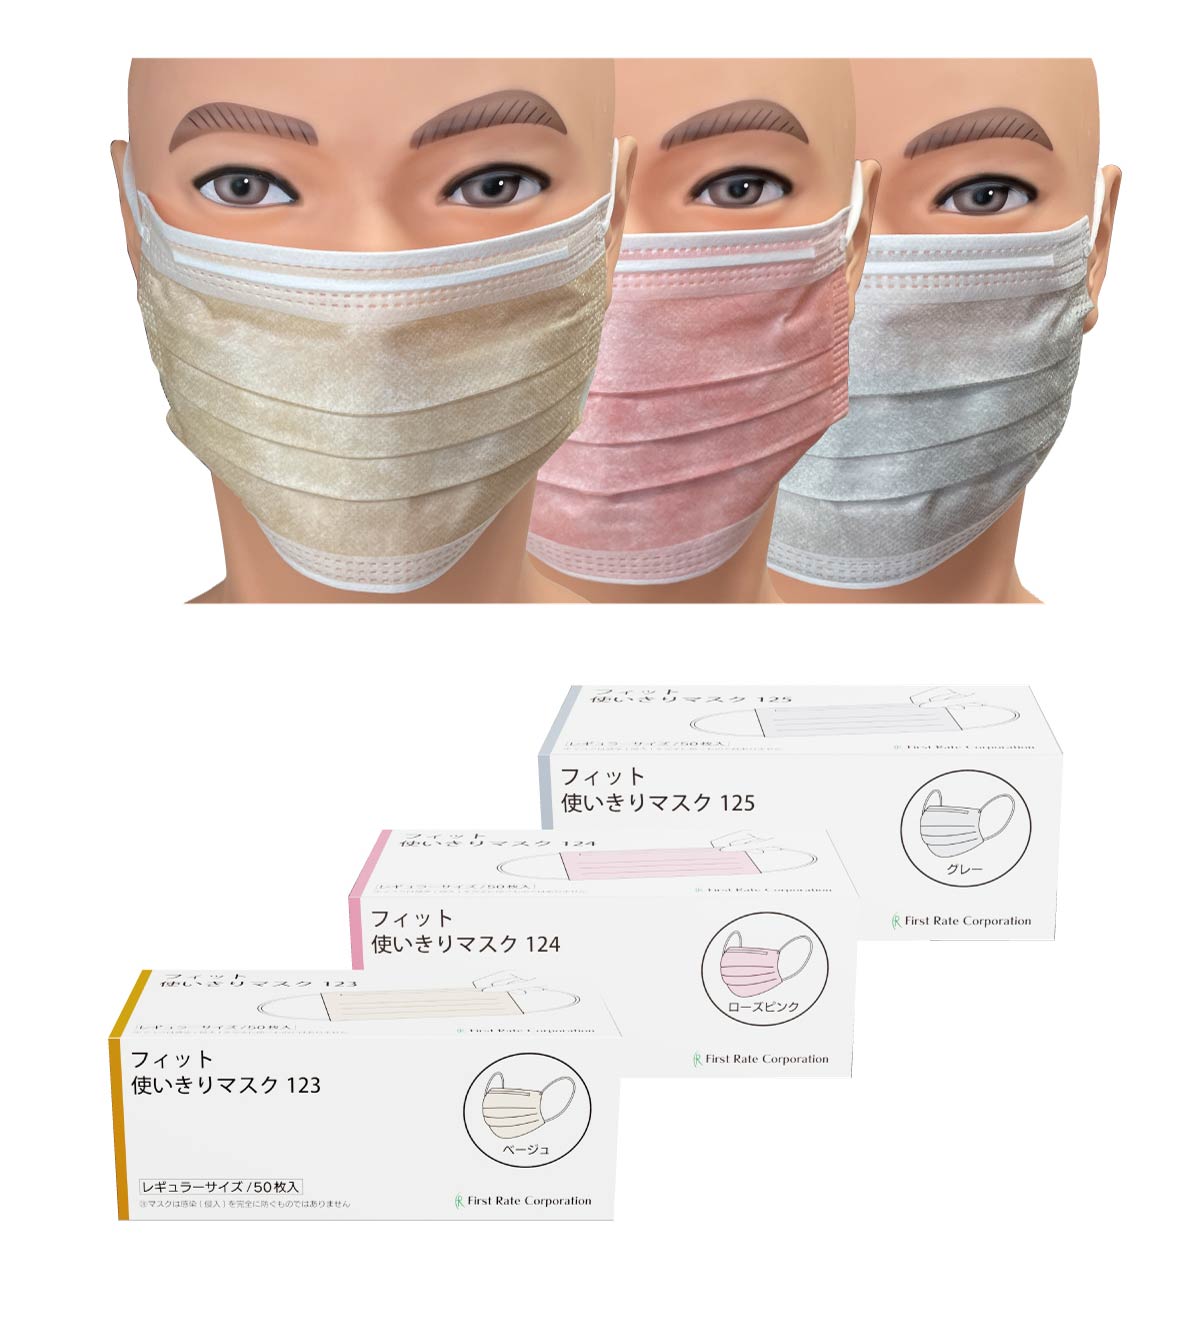  <strong>■JIS T9001医療用マスク クラスⅡ適合
「フィット使いきりマスク」１２月より順次出荷開始
新色「ベージュ」「ローズピンク」「グレー」も追加発売 </strong>
